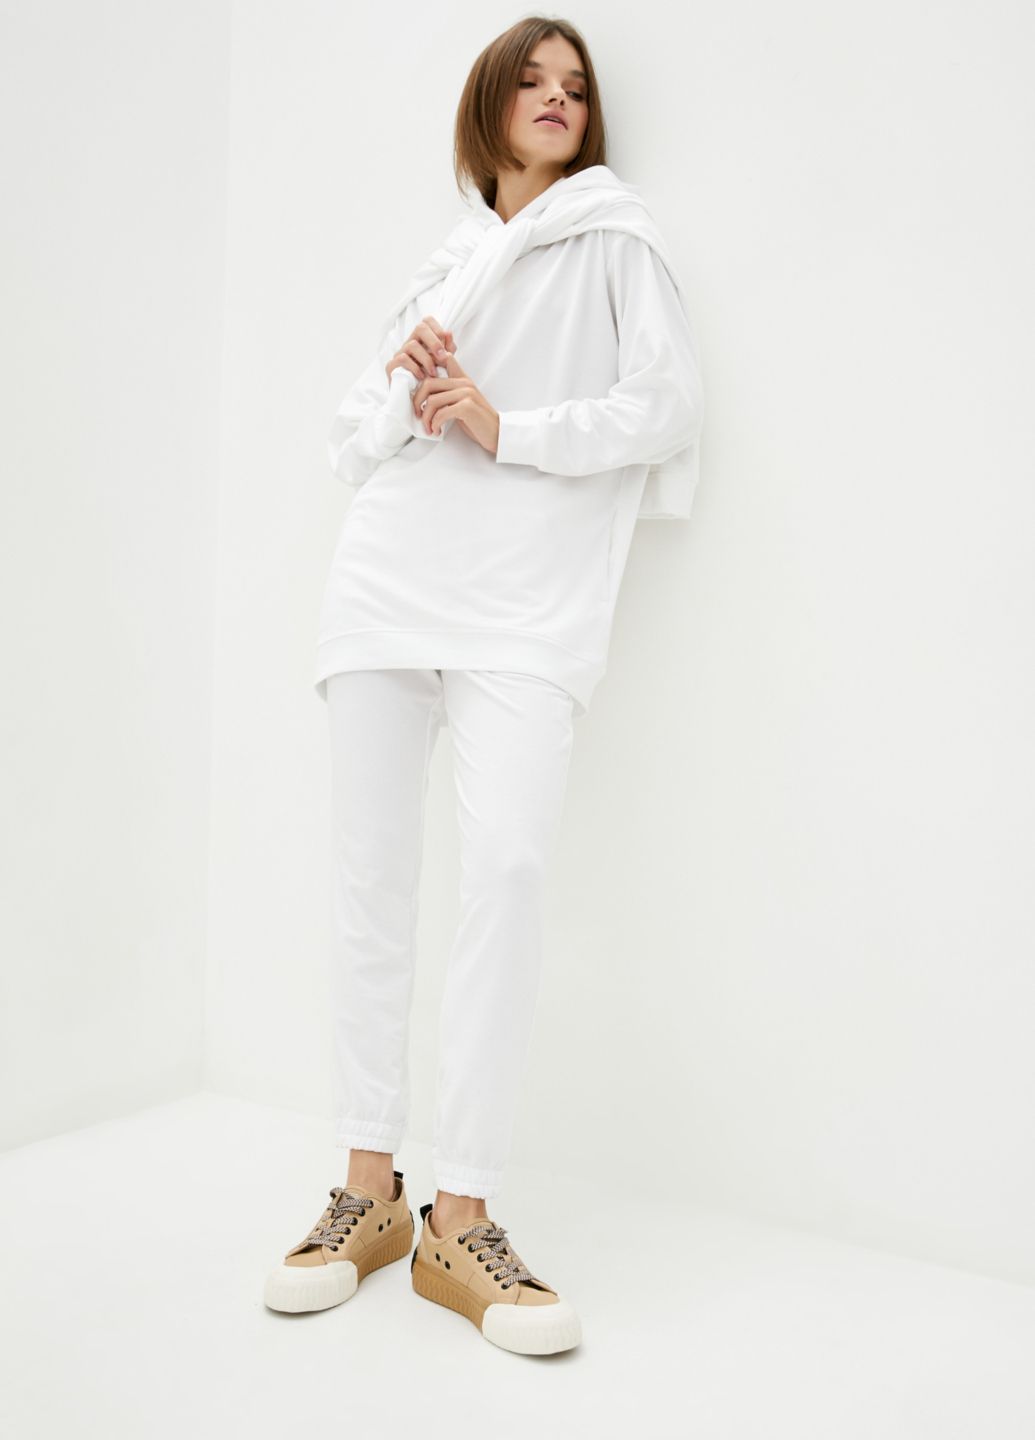 Купить Спортивные штаны женские Merlini Латина 600000013 - Белый, 46-48 в интернет-магазине